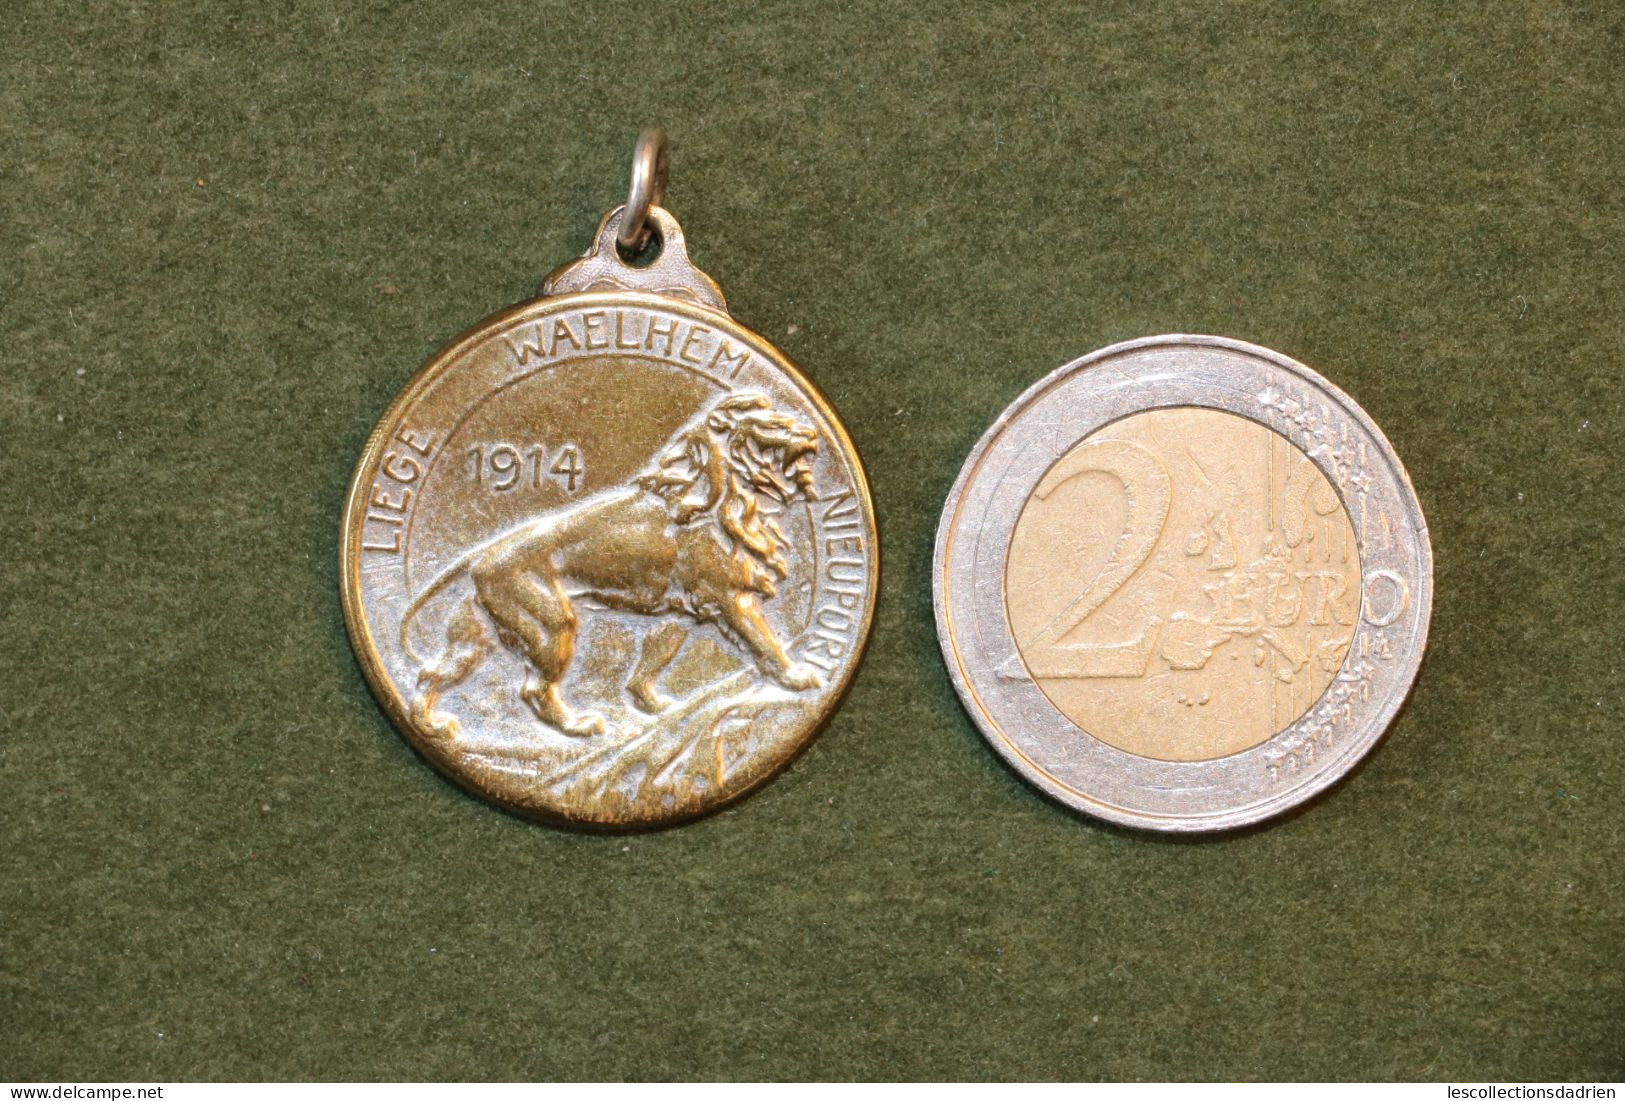 Médaille Belge Liège Waelhem Nieuport Guerre 14-18 - Belgian Medal WWI Médaillette Journée - Belgique